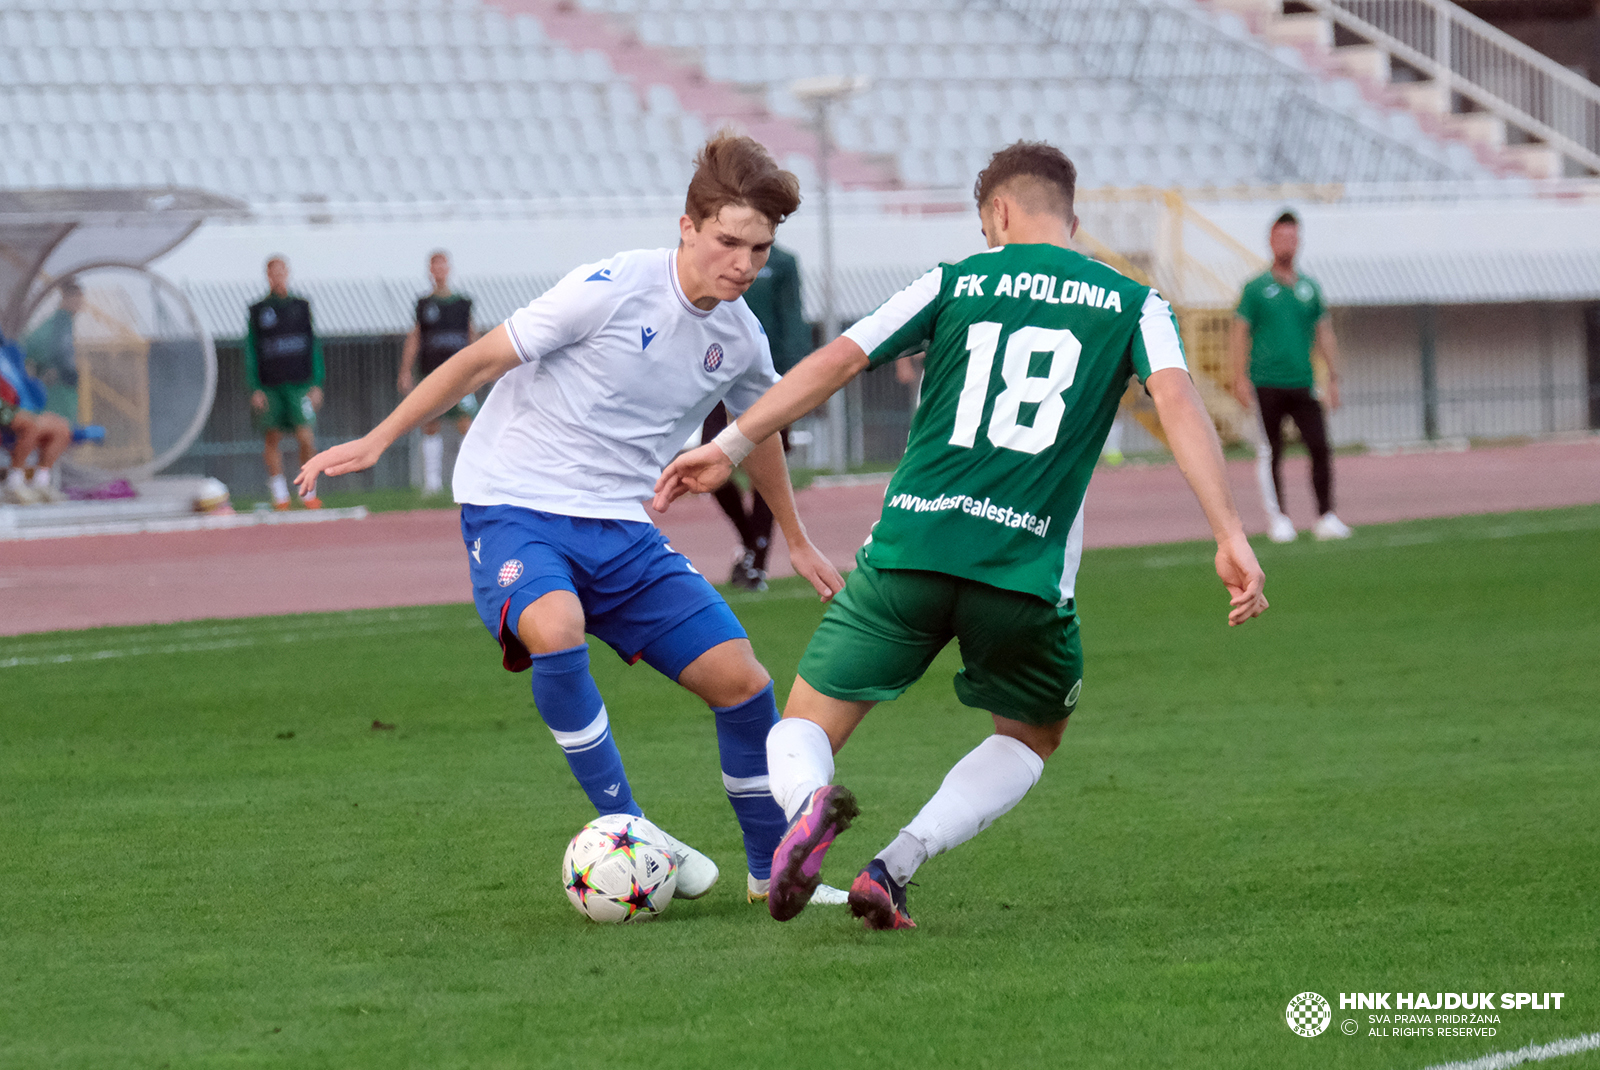 Torreiche zweite Hälfte im Halbfinale: Hajduk Split U19 - AC Mailand U19, UEFA Youth League